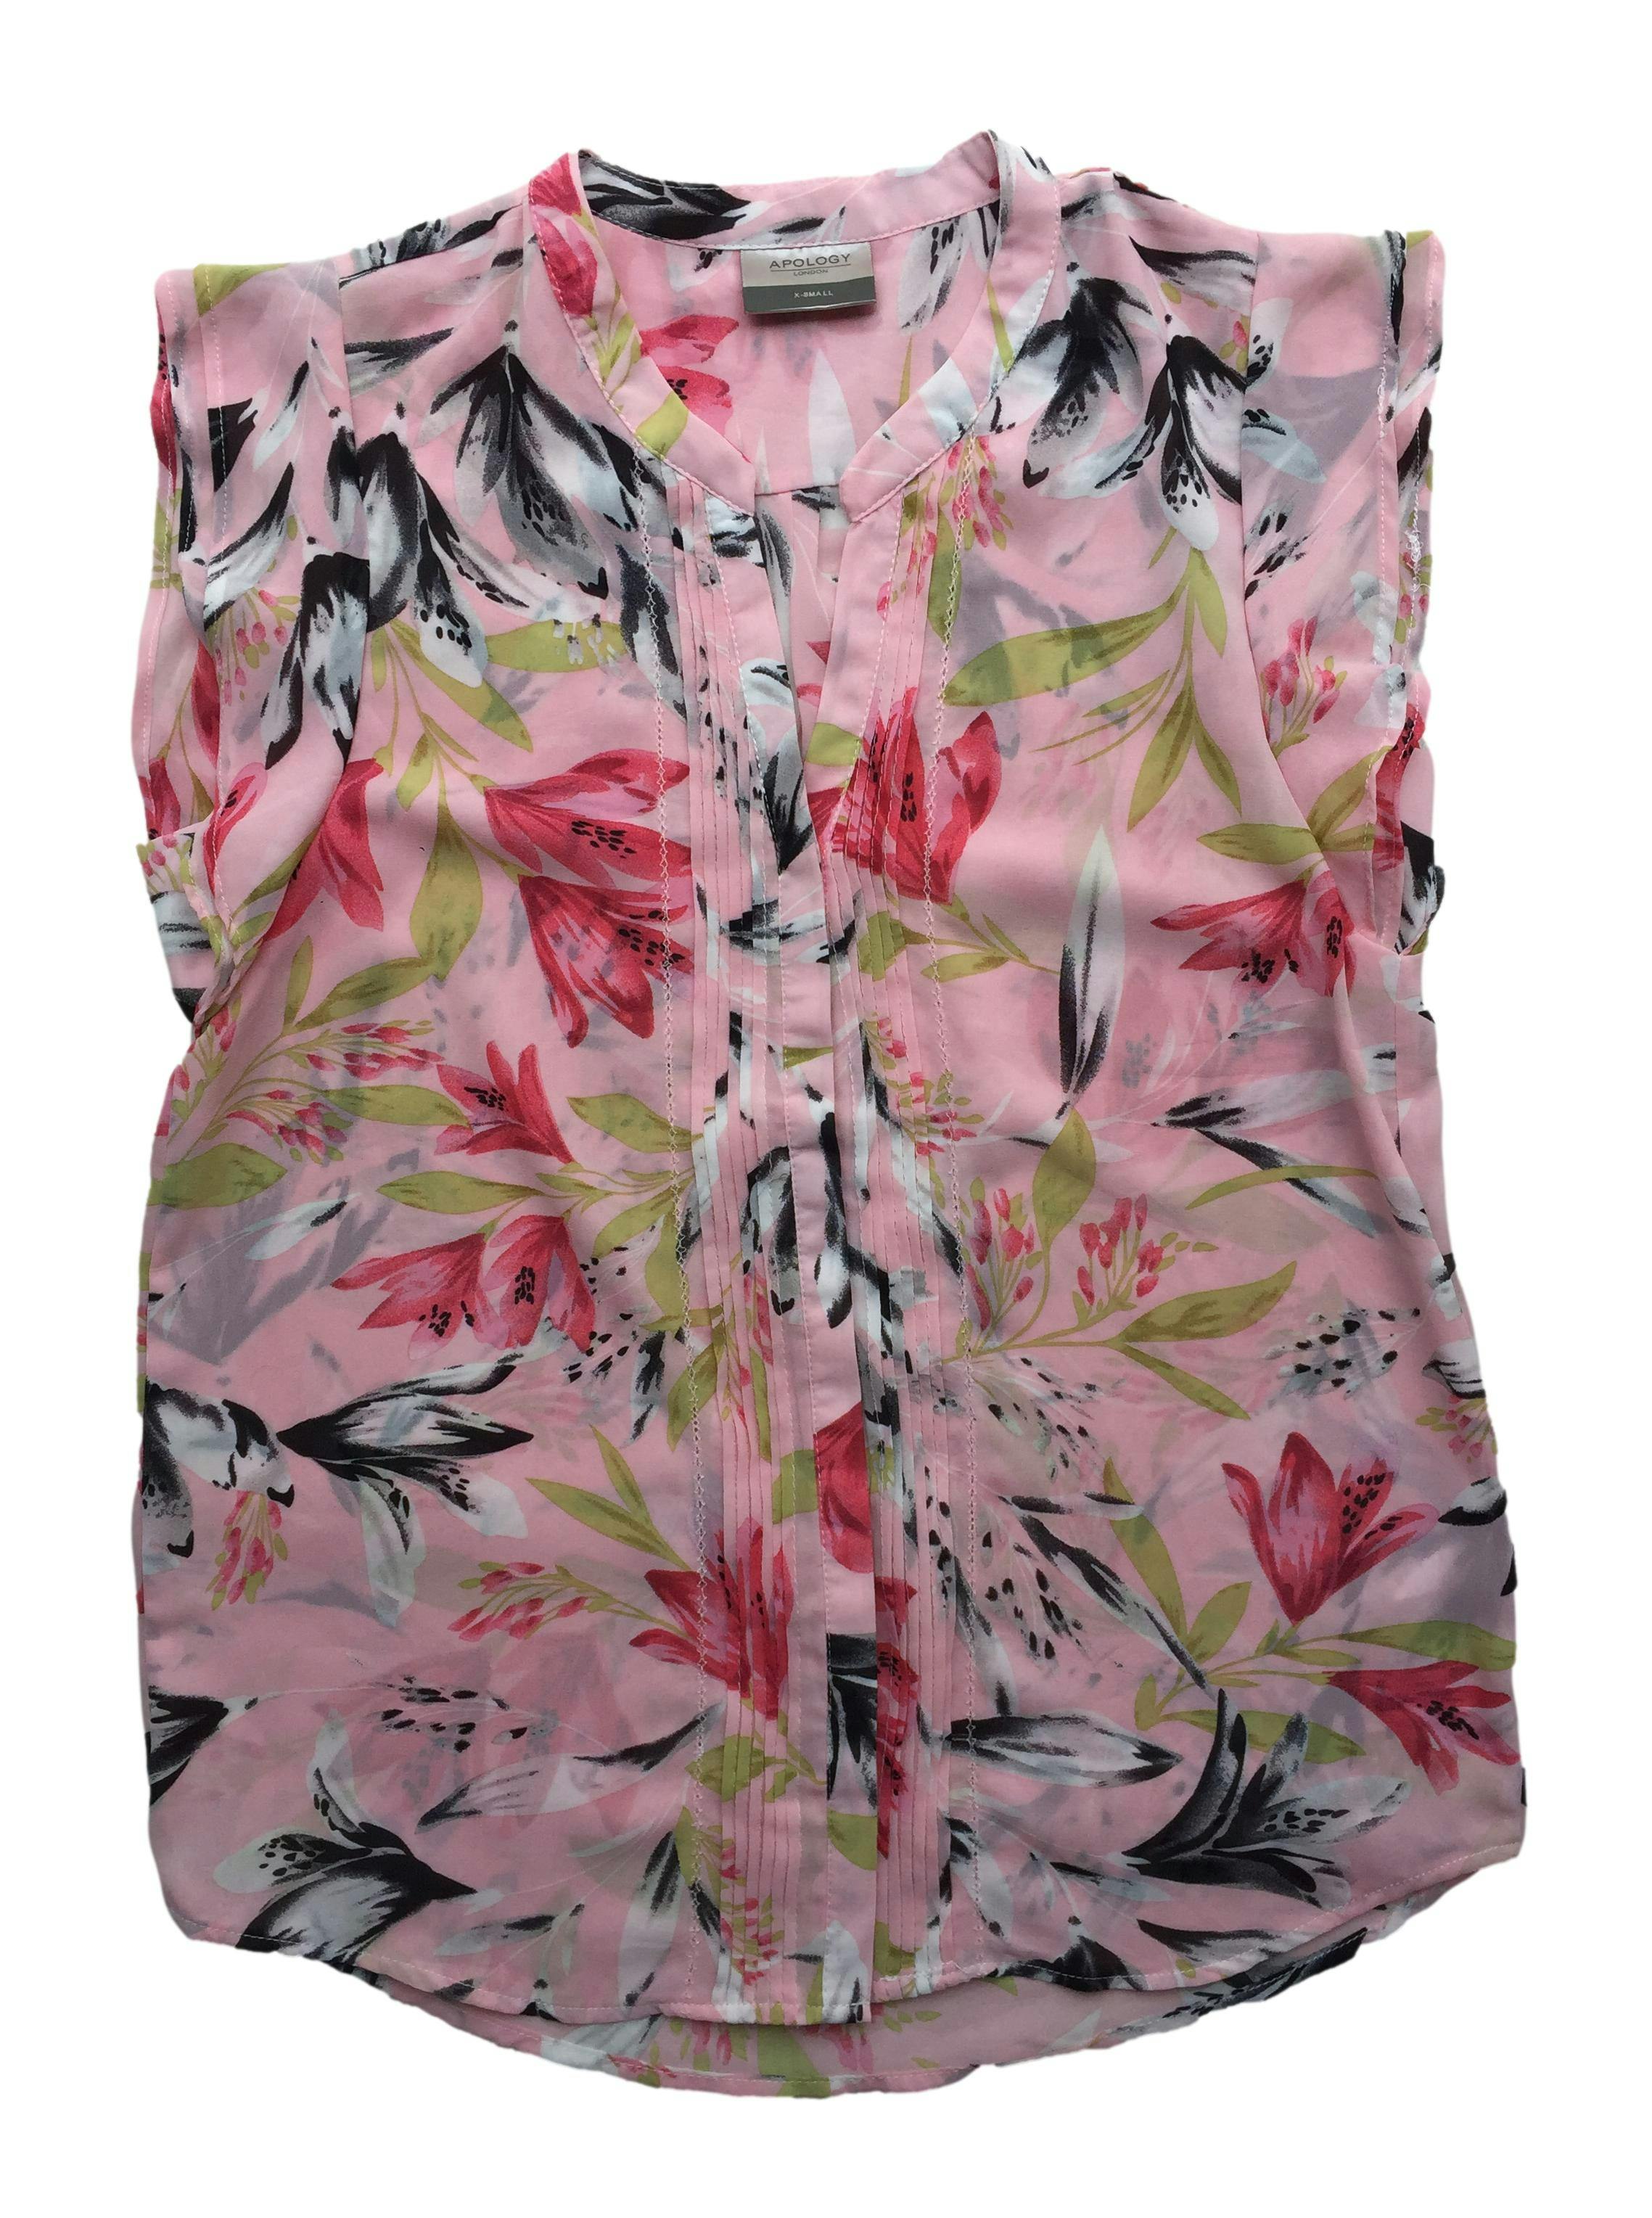 Blusa Apology de gasa rosa con flores, doble capa delantera, botones y pliegues. Busto 95cm Largo 65cm